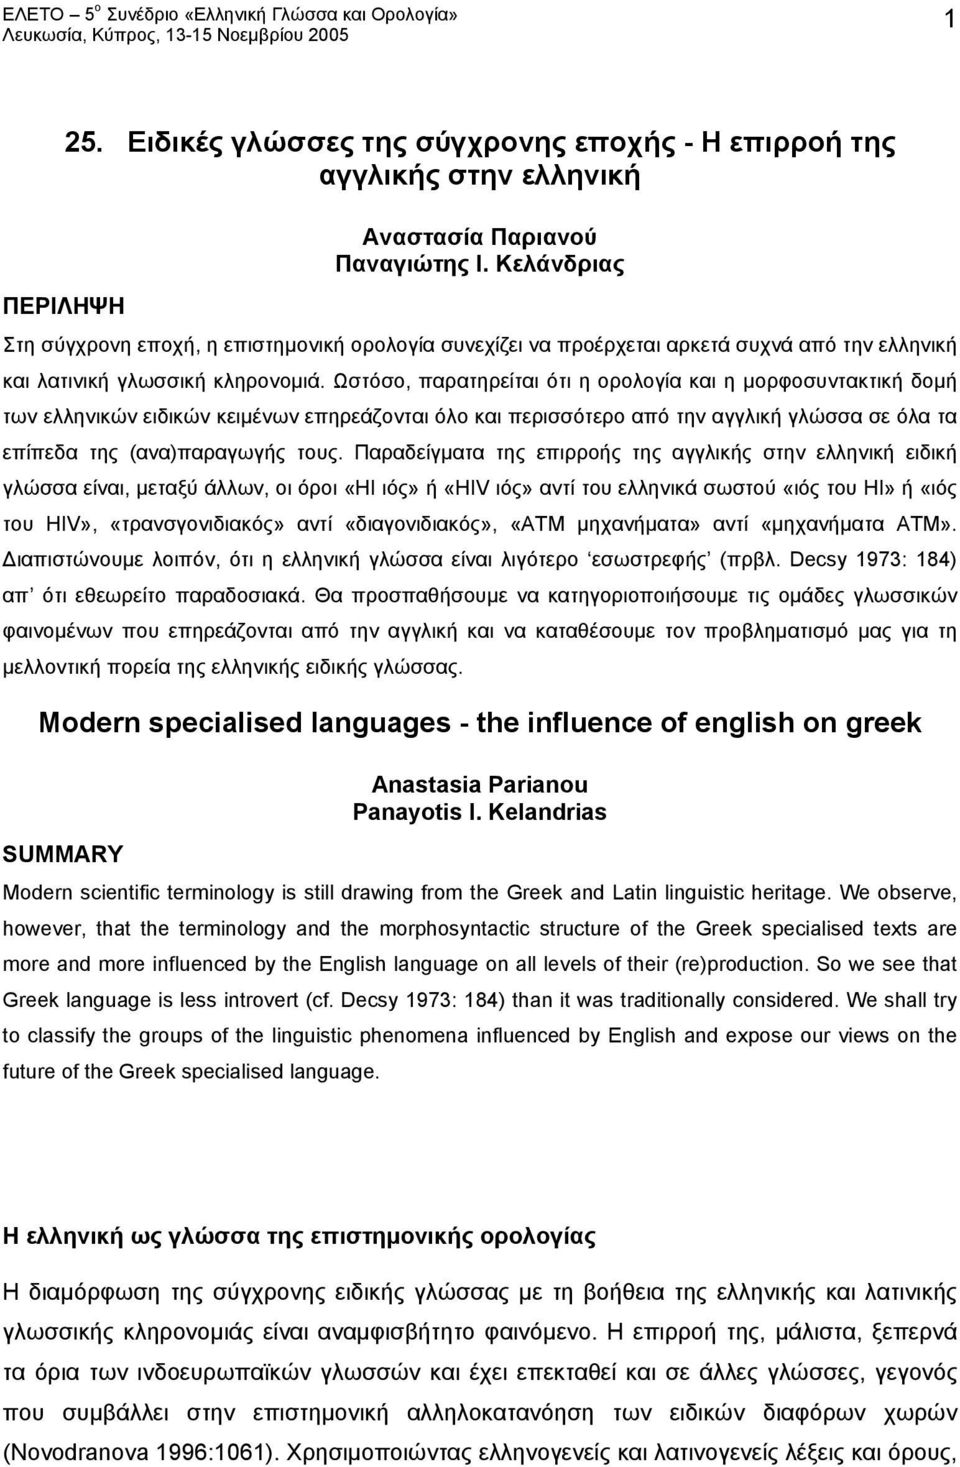 Ωστόσο, παρατηρείται ότι η ορολογία και η μορφοσυντακτική δομή των ελληνικών ειδικών κειμένων επηρεάζονται όλο και περισσότερο από την αγγλική γλώσσα σε όλα τα επίπεδα της (ανα)παραγωγής τους.